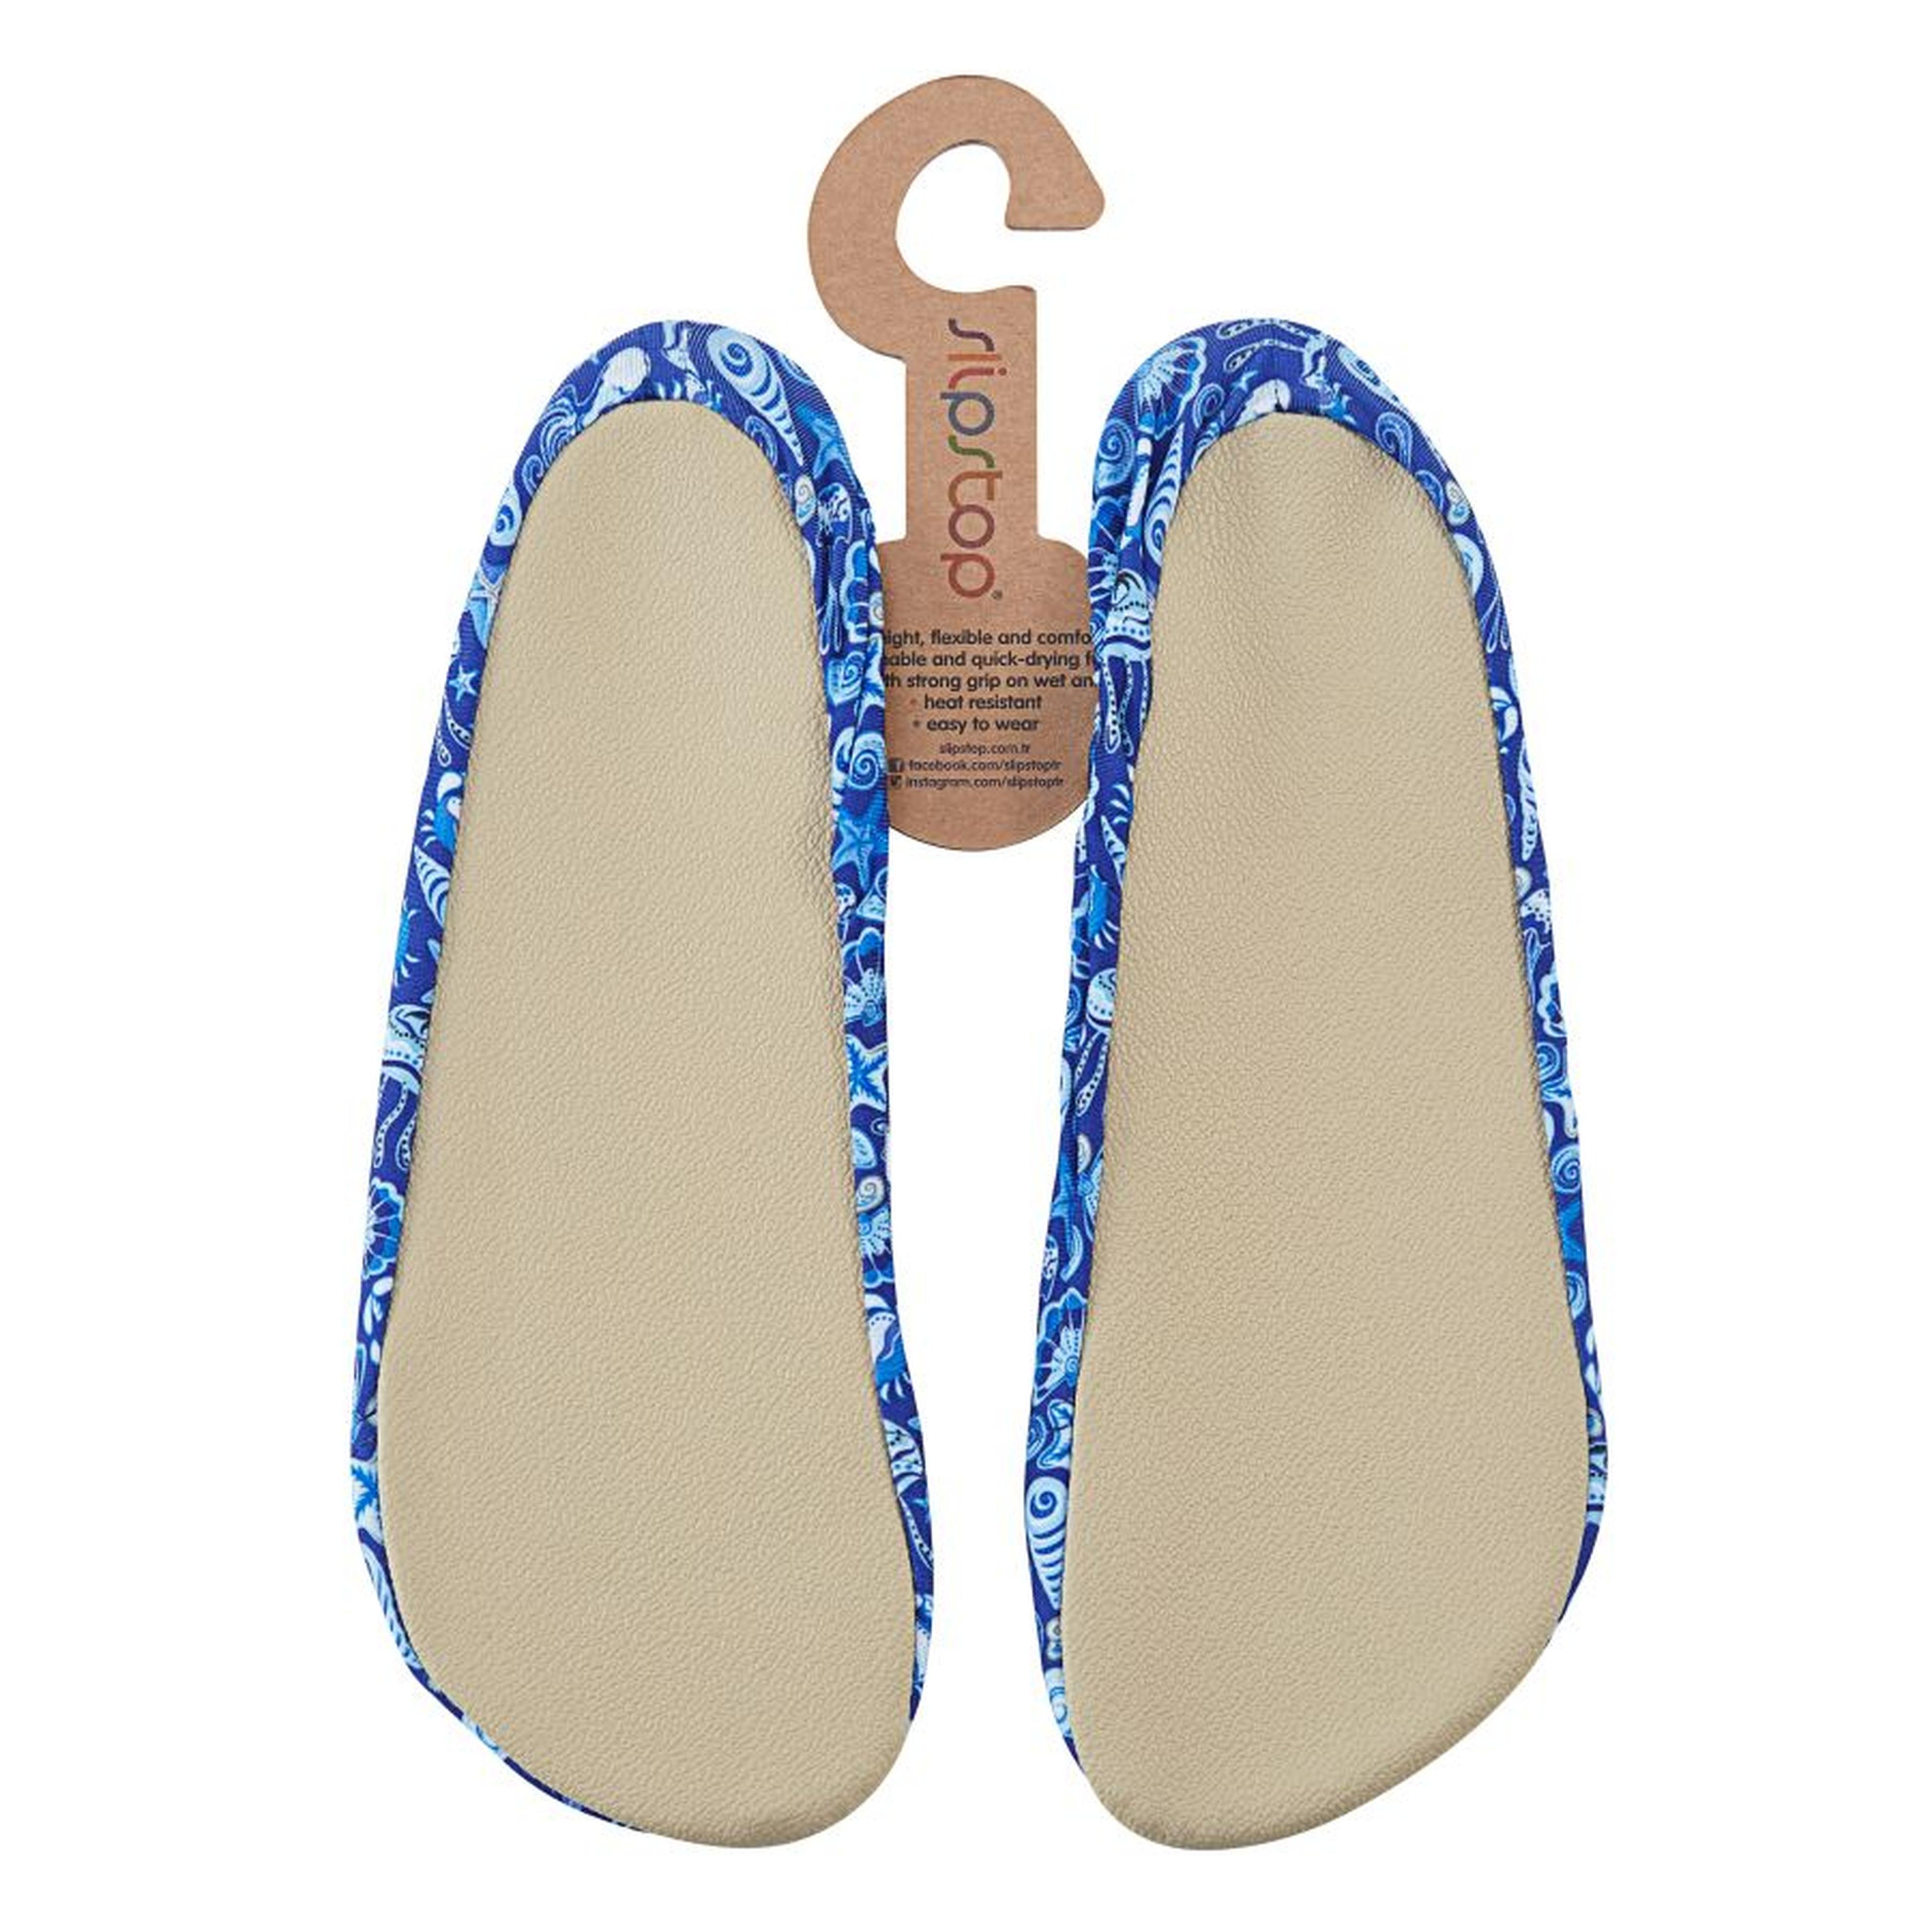 Slipstop Shell Kadın Mavi Havuz Ayakkabısı